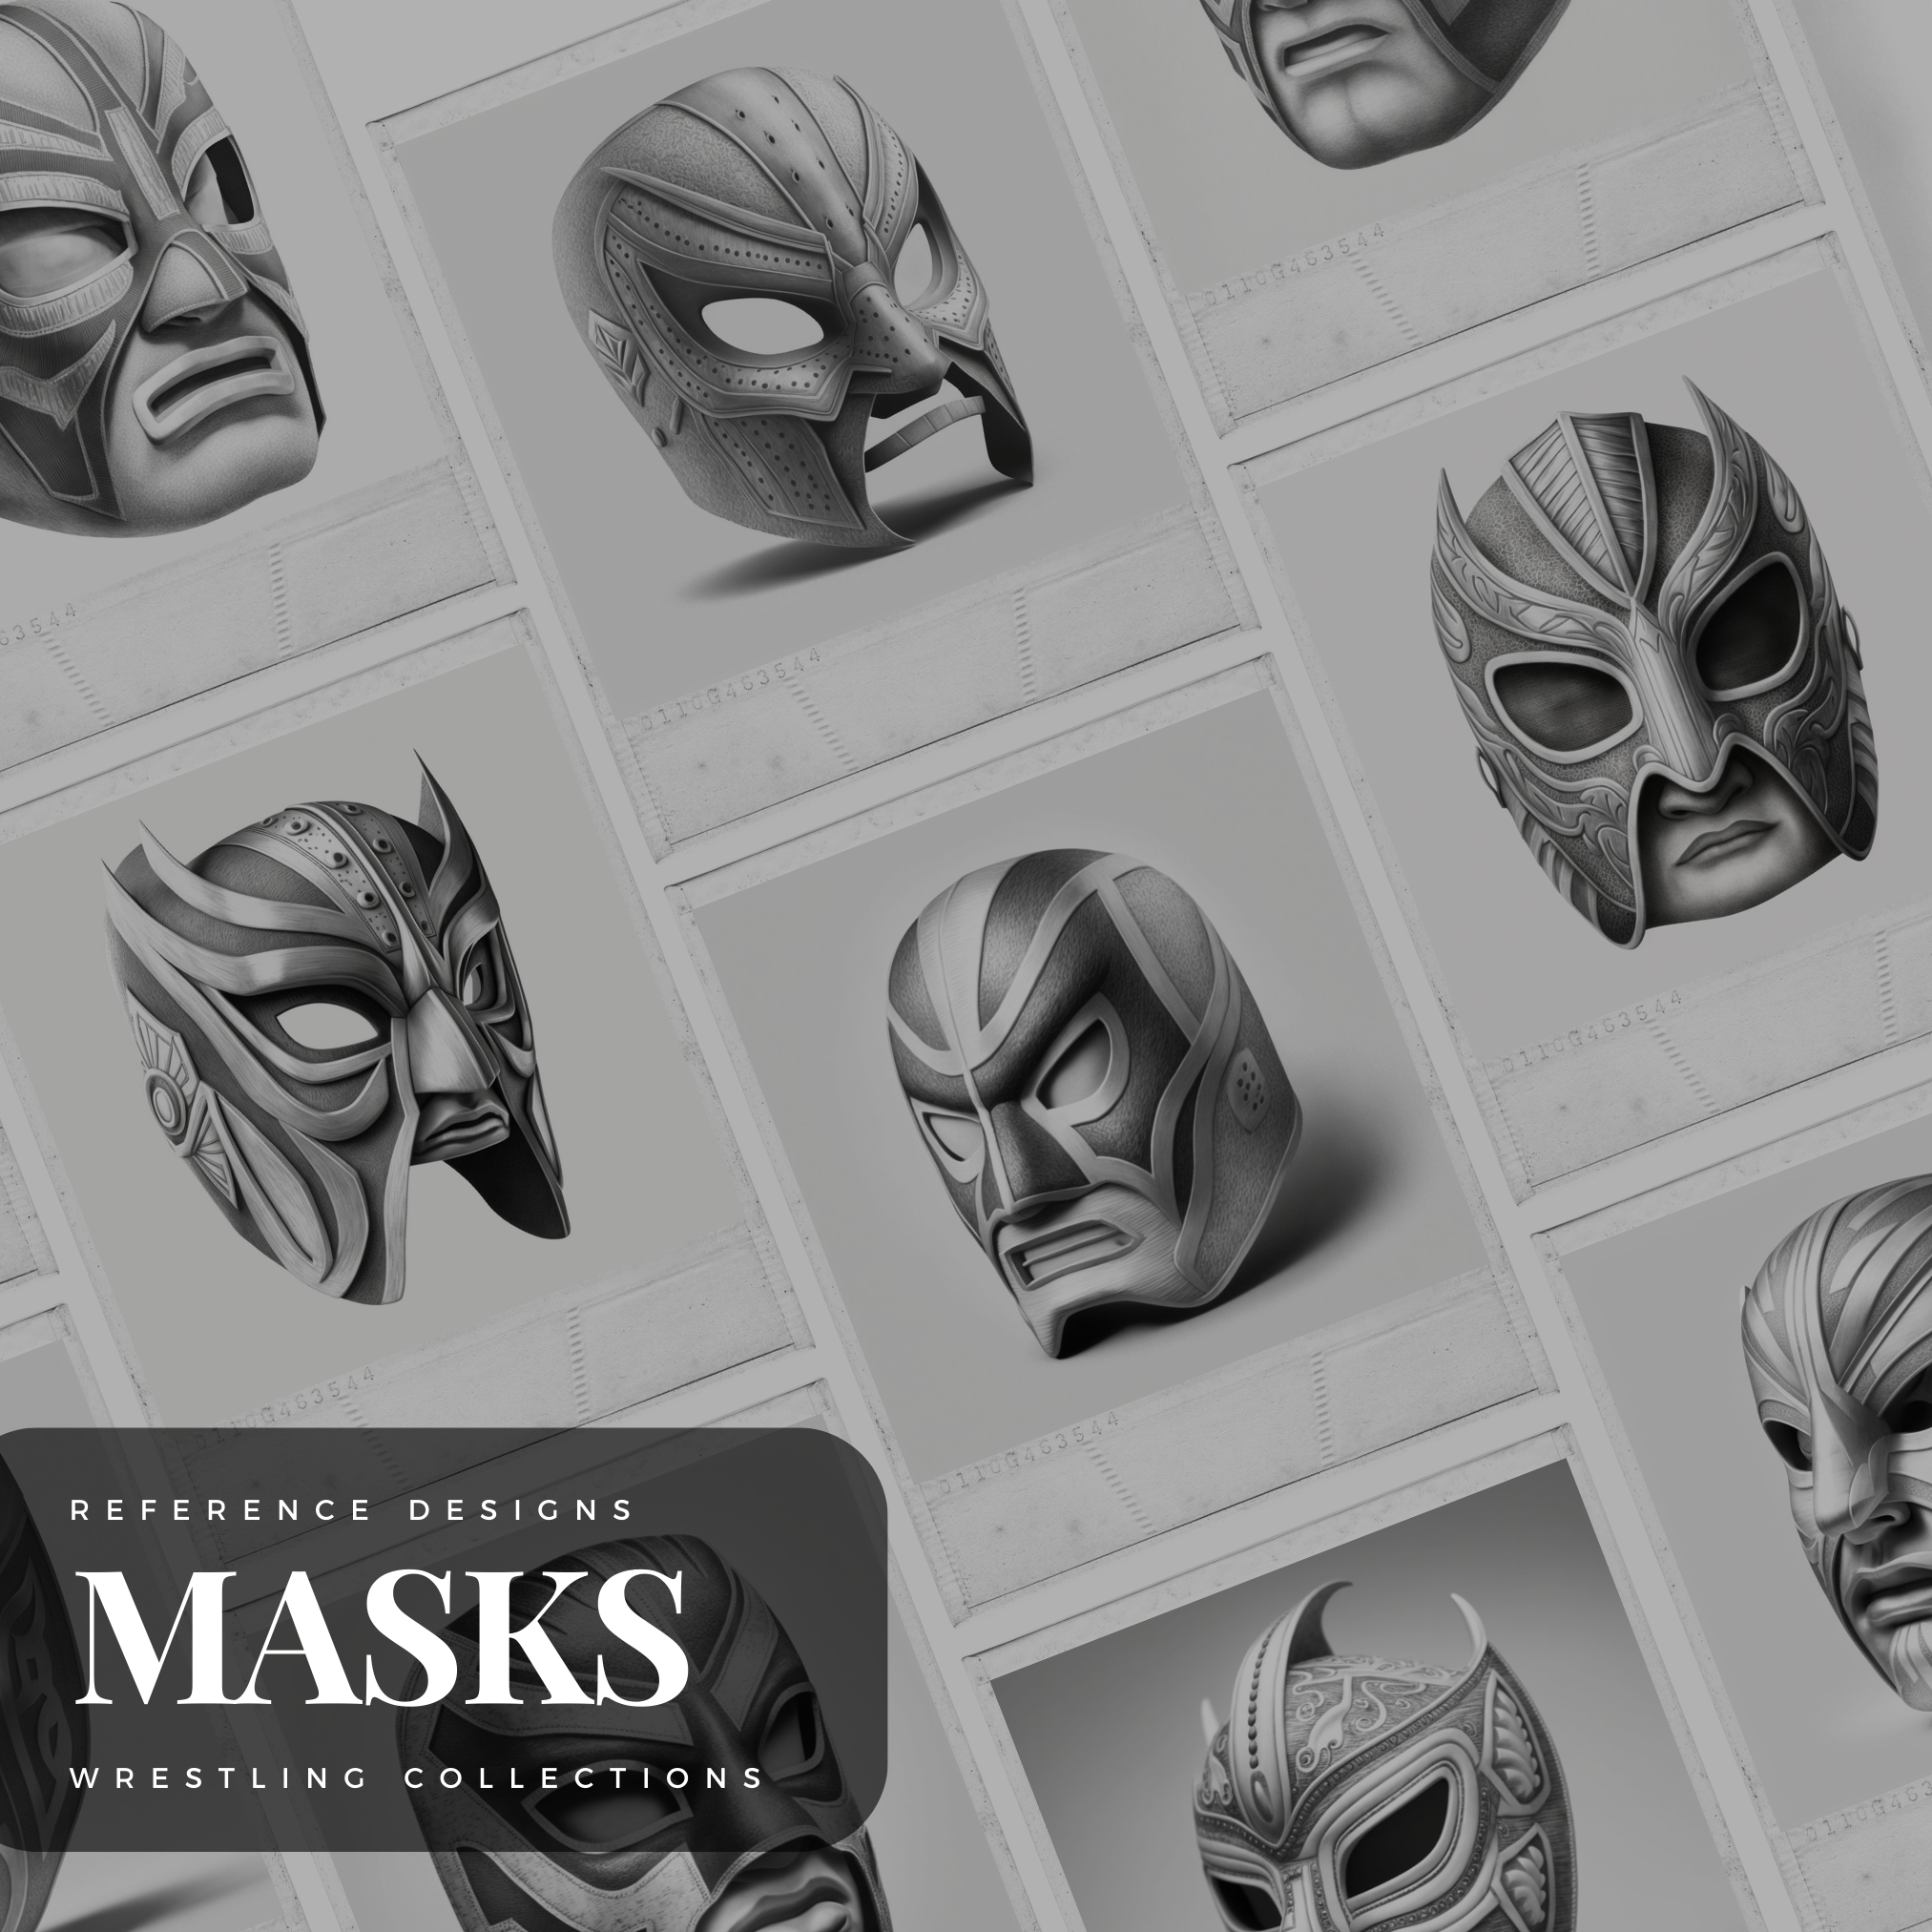 Wrestling Masks Digital Reference Design Collection: 50 Procreate & Sketchbook Images